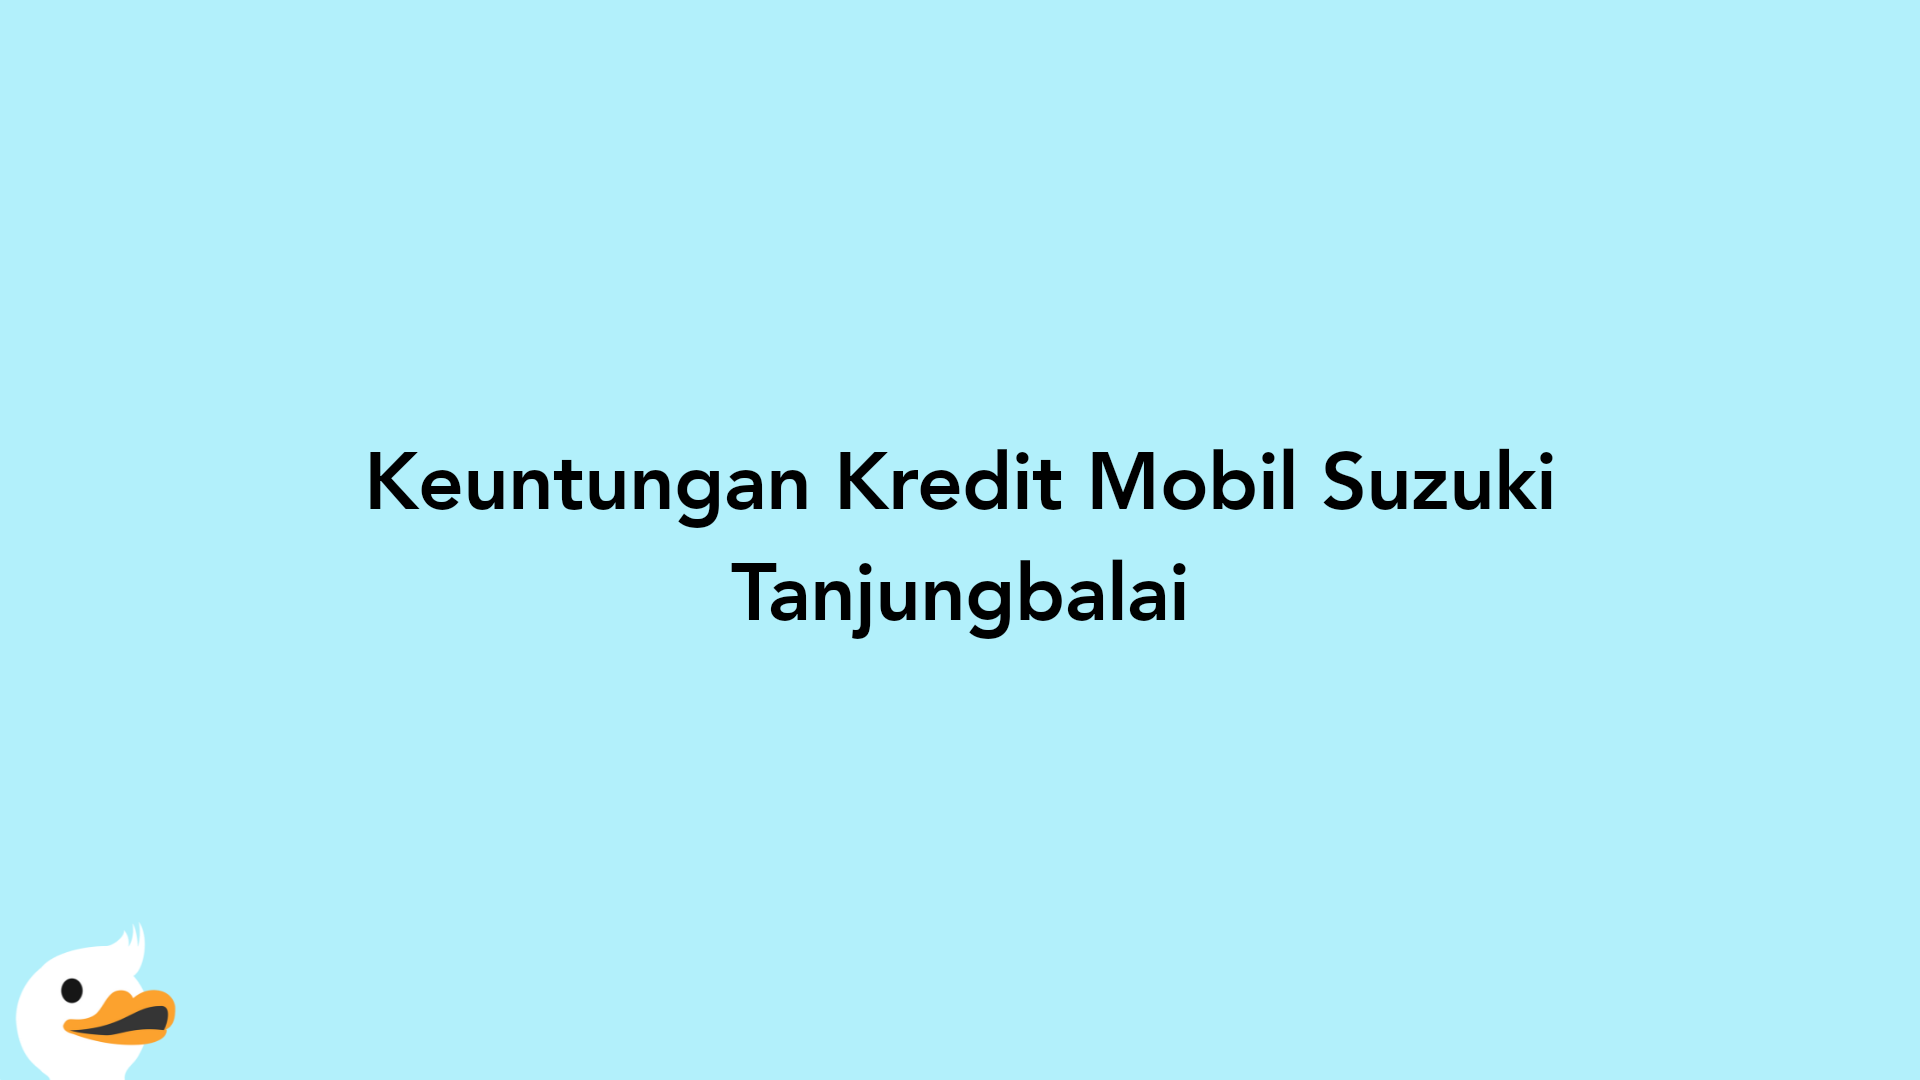 Keuntungan Kredit Mobil Suzuki Tanjungbalai